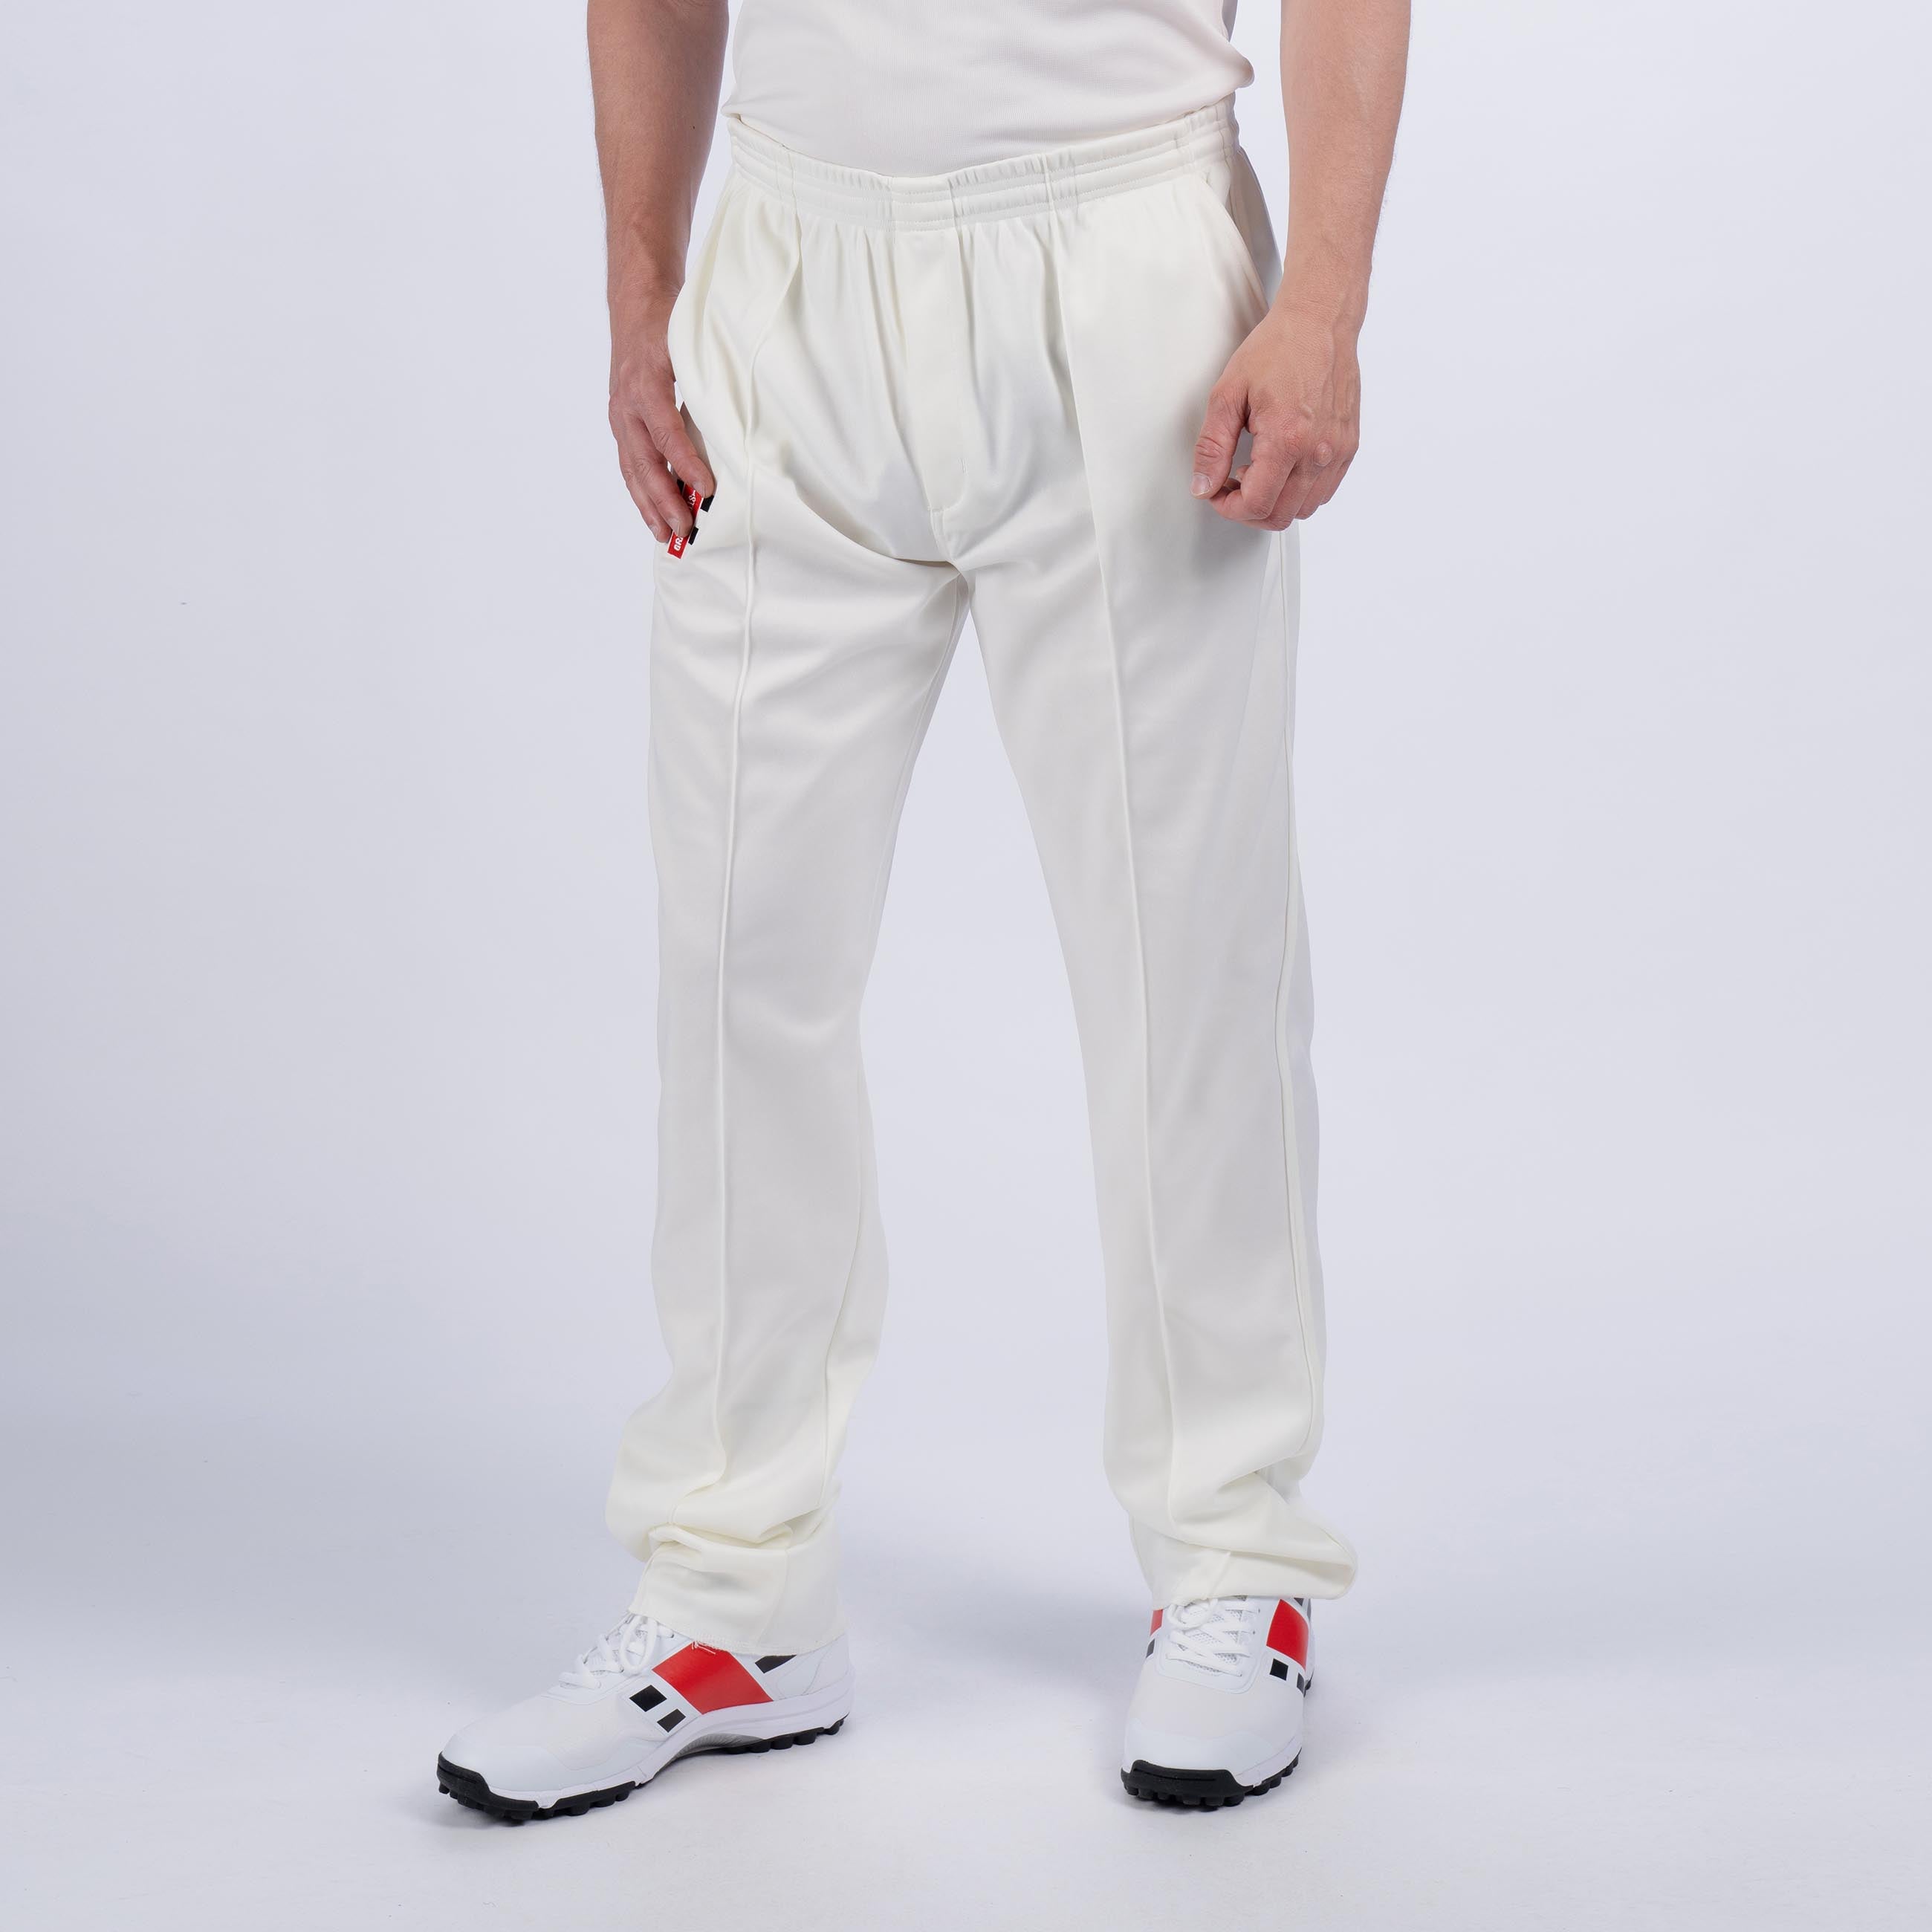 Buy Kids Straight Fit Cricket Trouser TS 500 Jr White Online | Decathlon